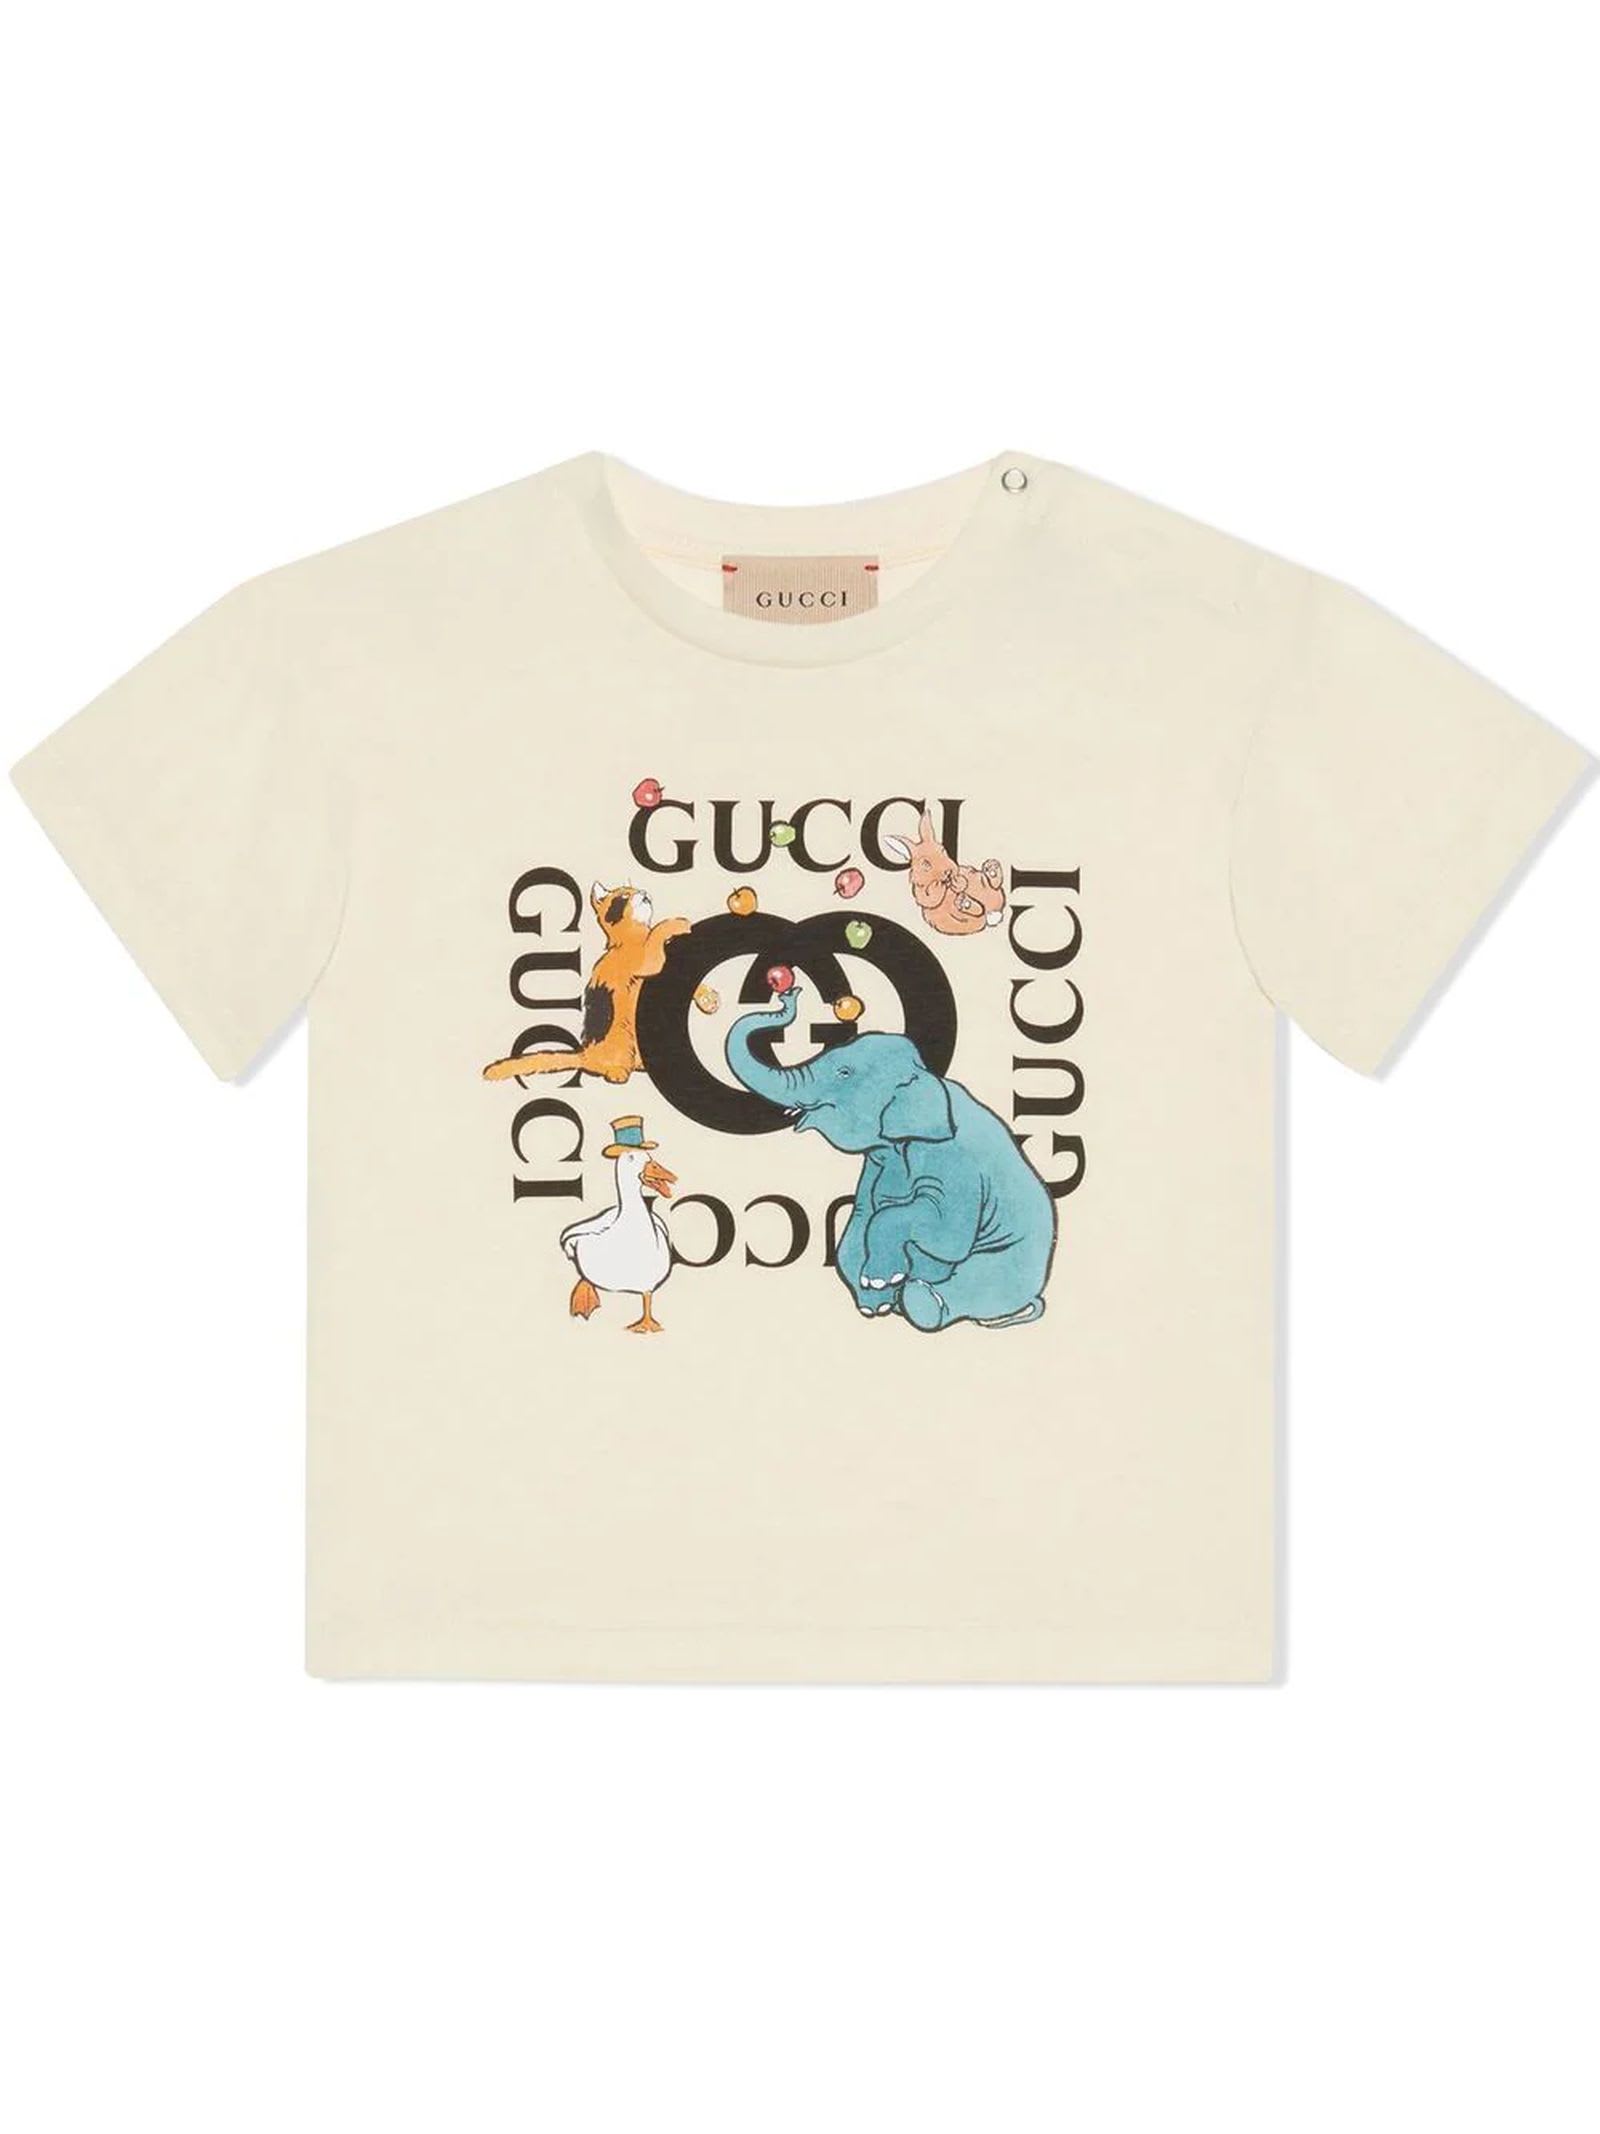 Gucci Beige Cotton T-shirt